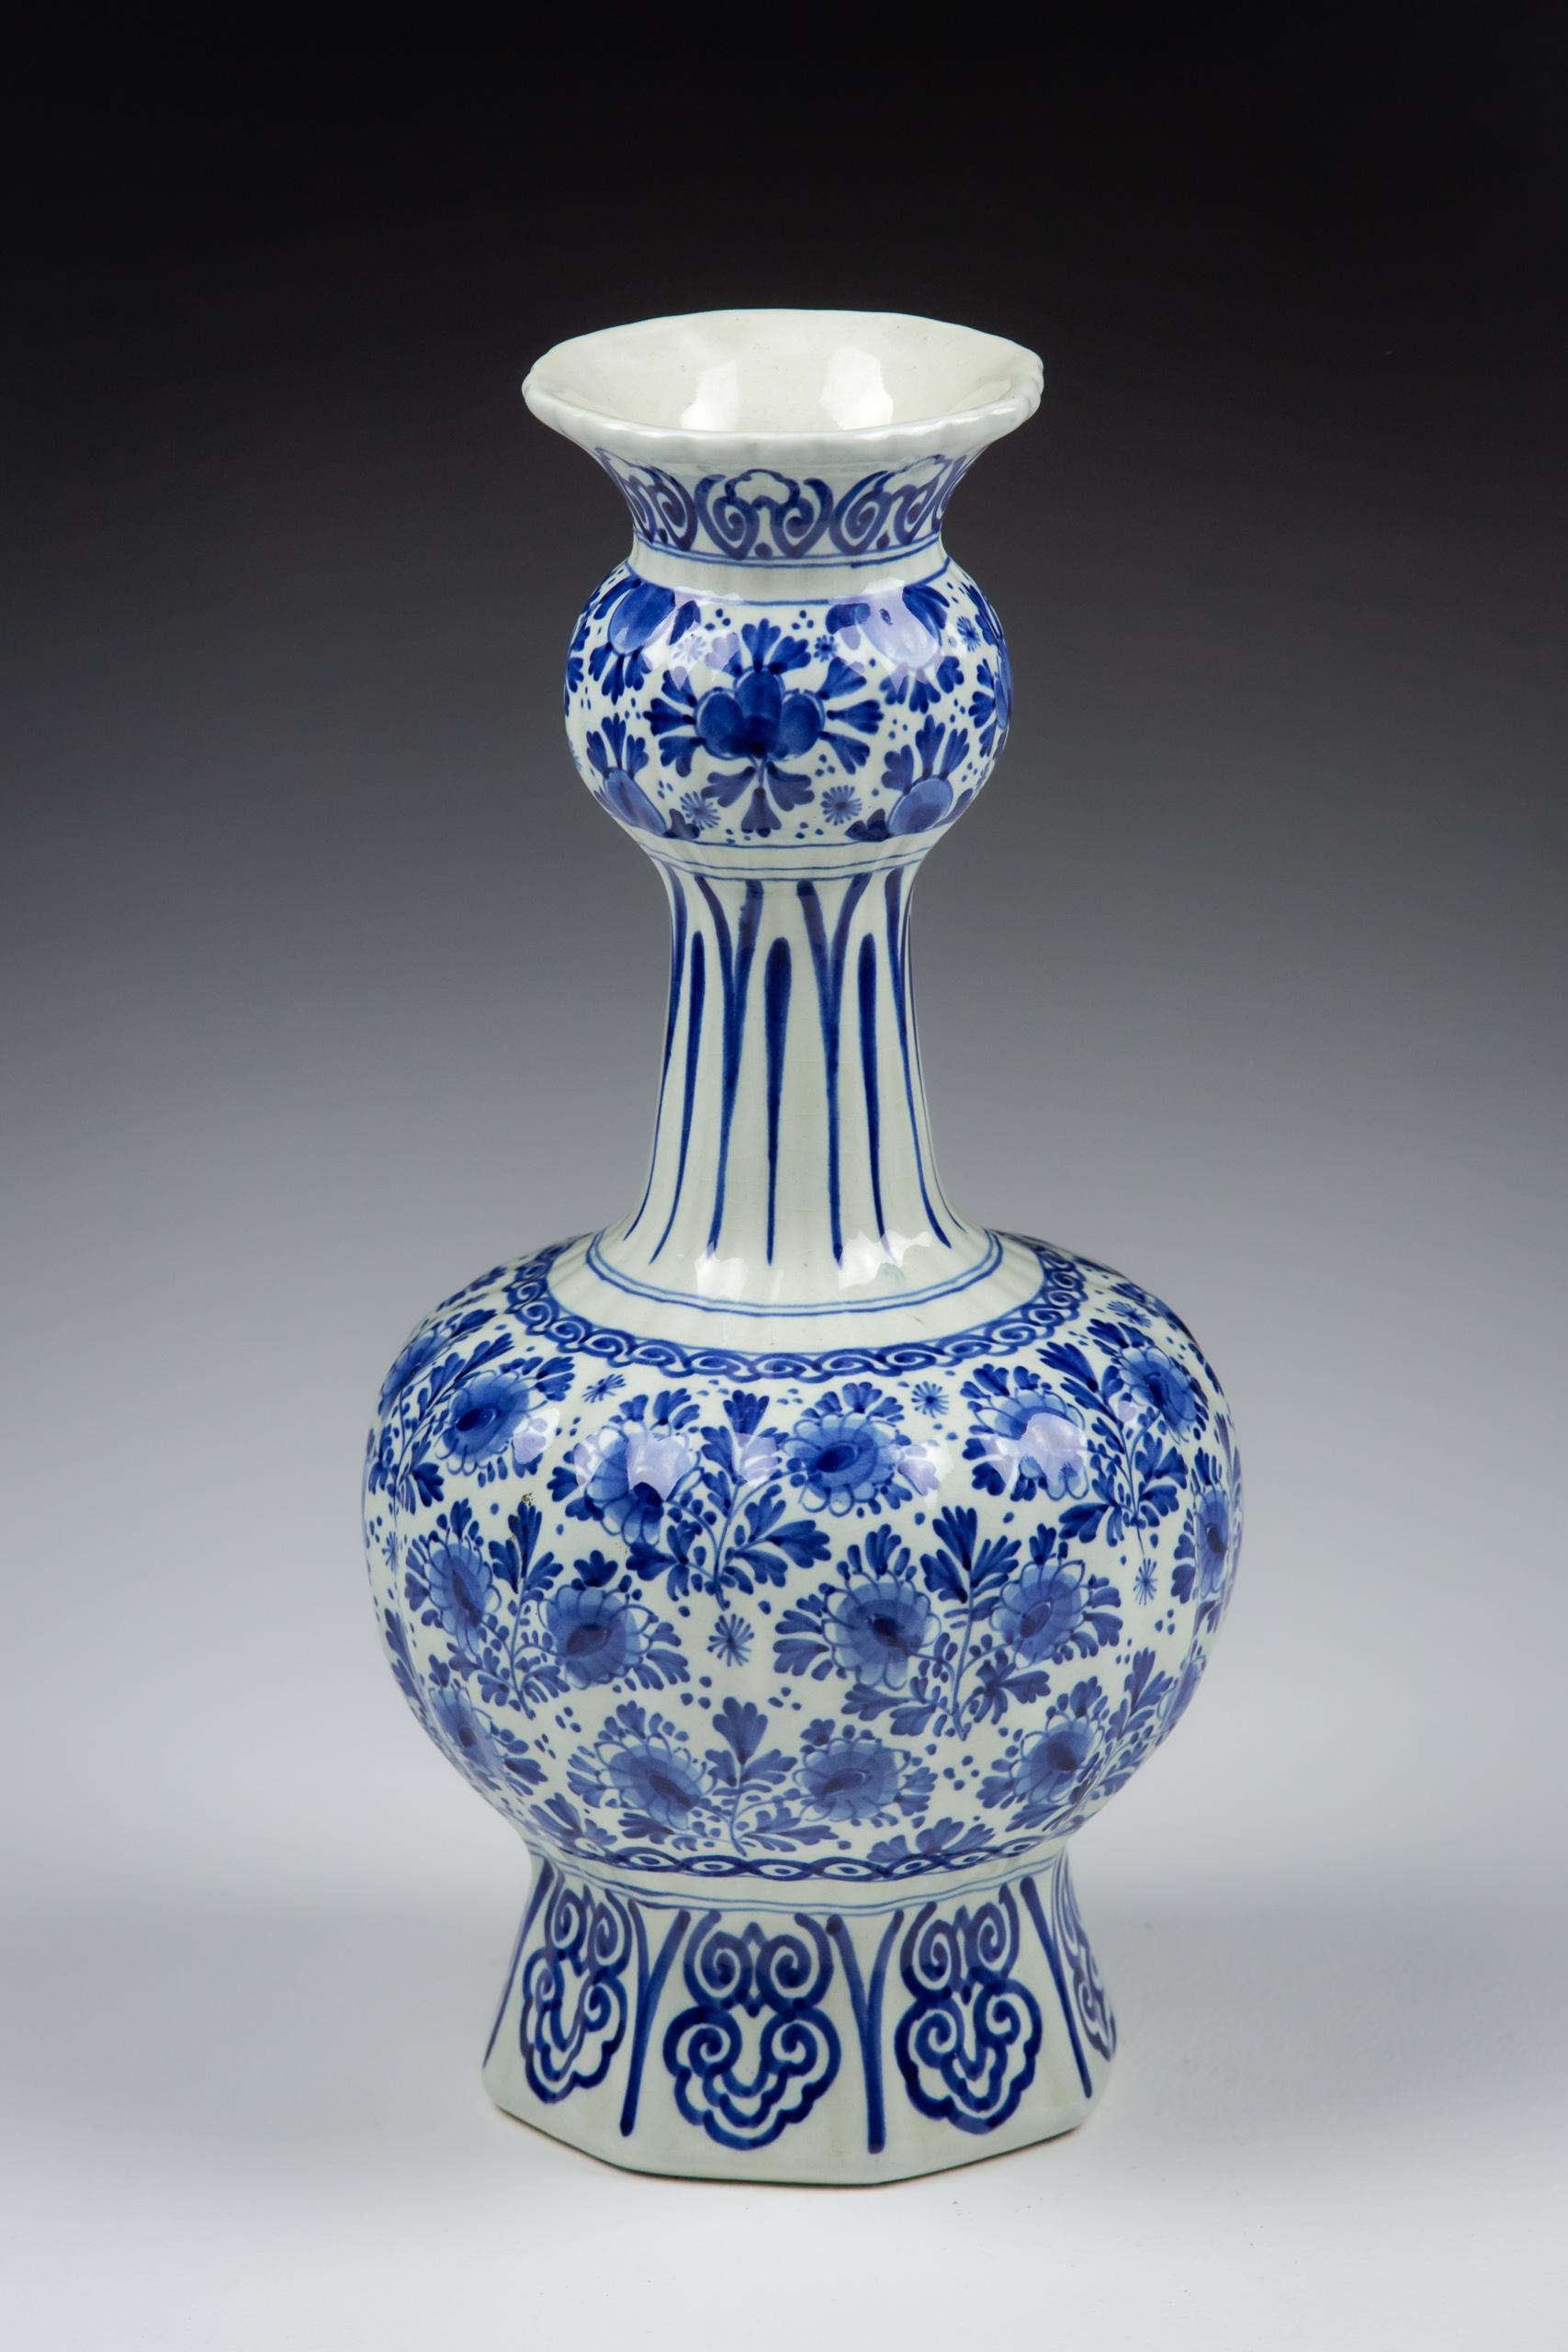 Niederländische Delft Blau und Weiß Knobbelvaas oder Doppelkürbis Vase.

Zwiebeliger Körper unter einem geknickten Hals.

Unterzeichnet und datiert.

CIRCA 1947